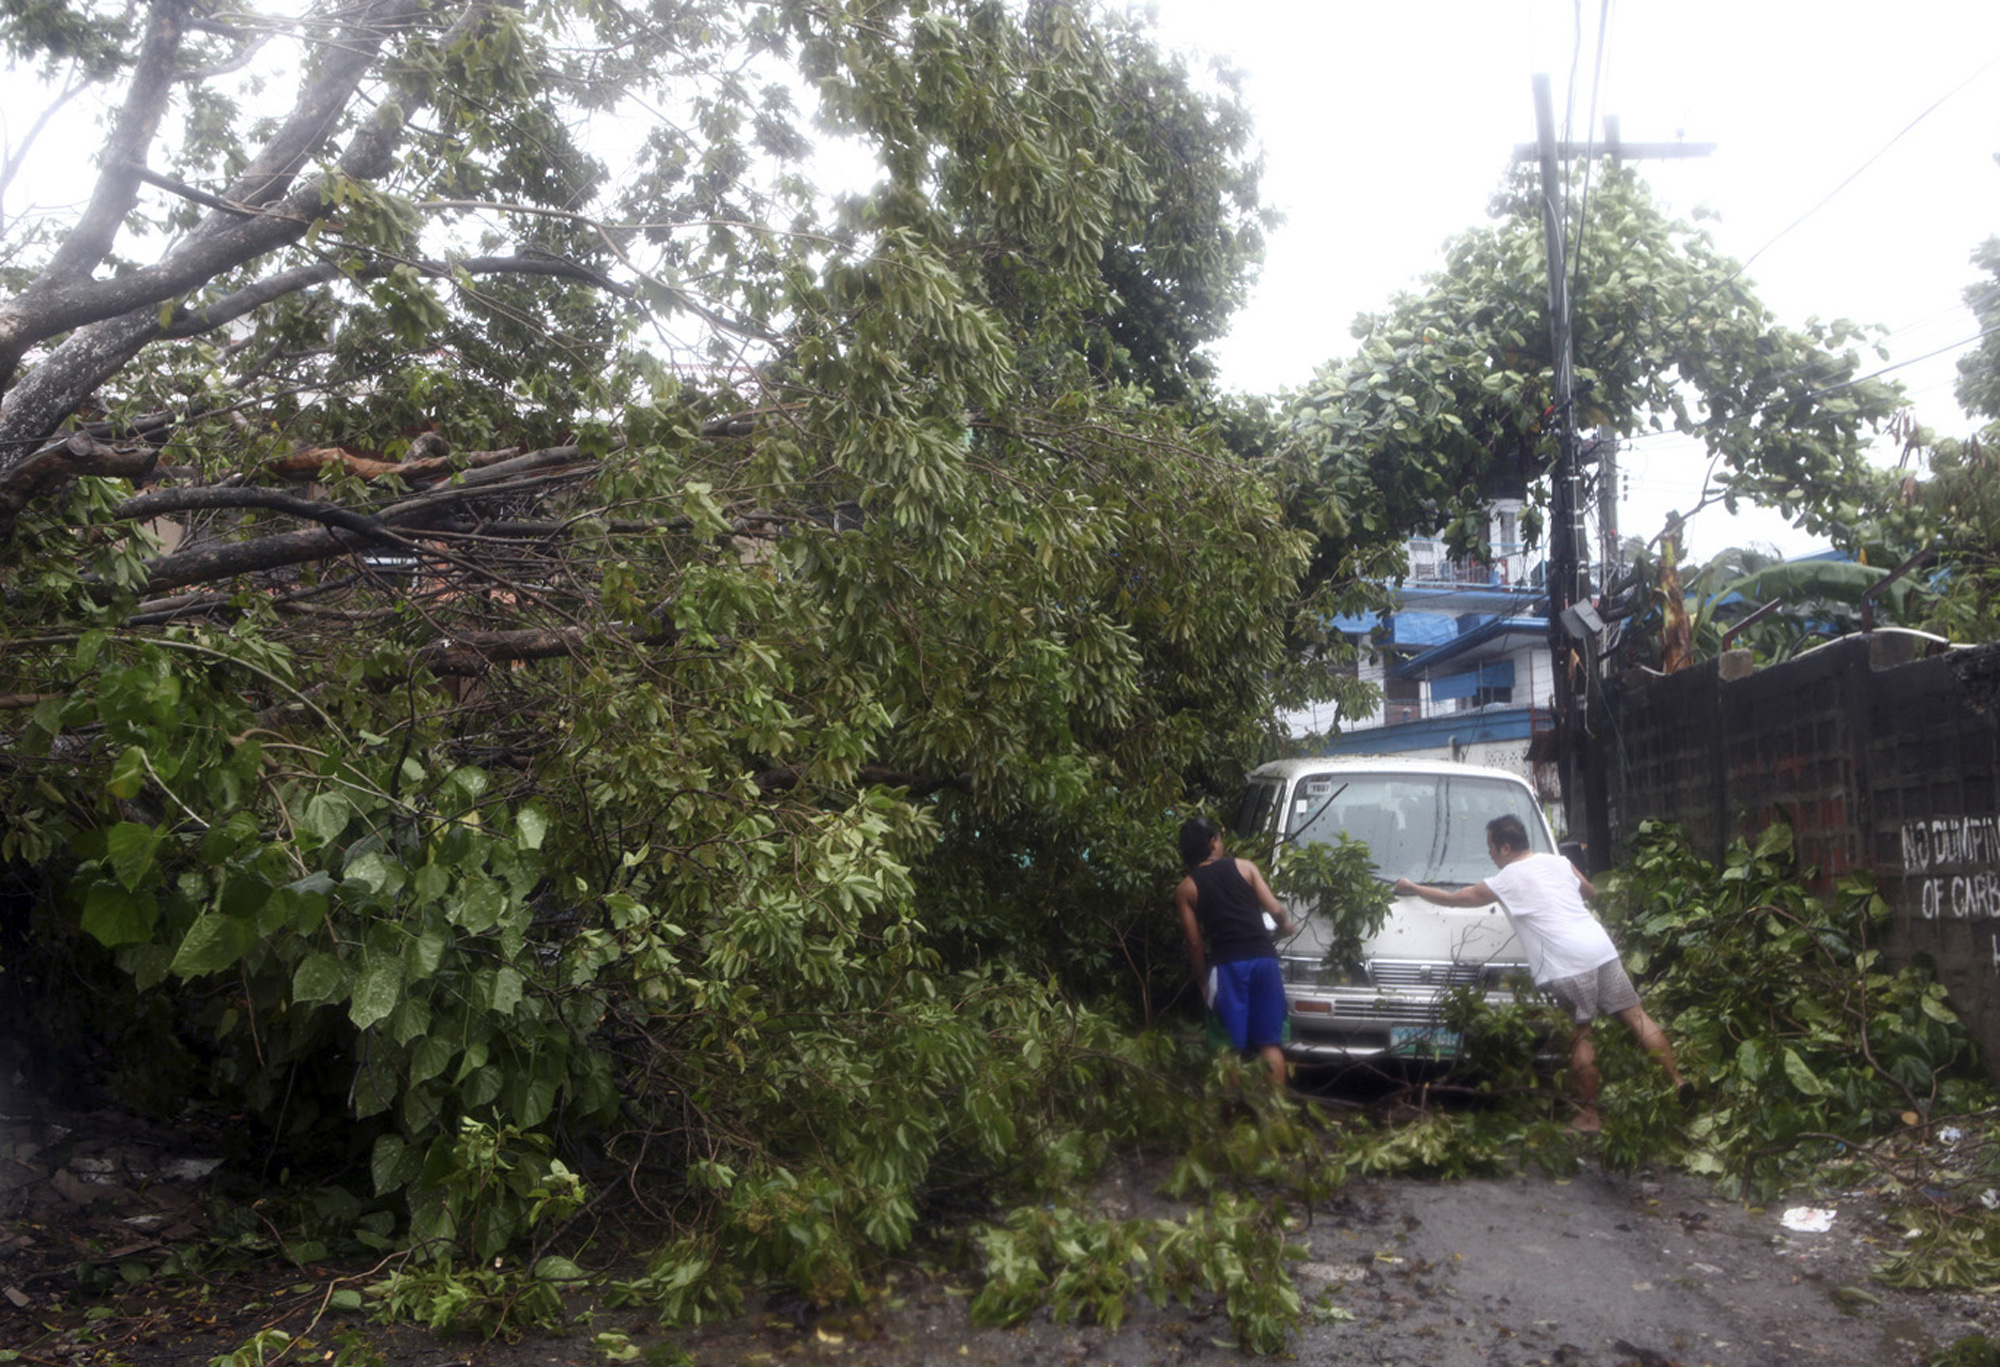 8/11 - Tufão Haiyan atingiu Filipinas com rajadas de 275 km/h